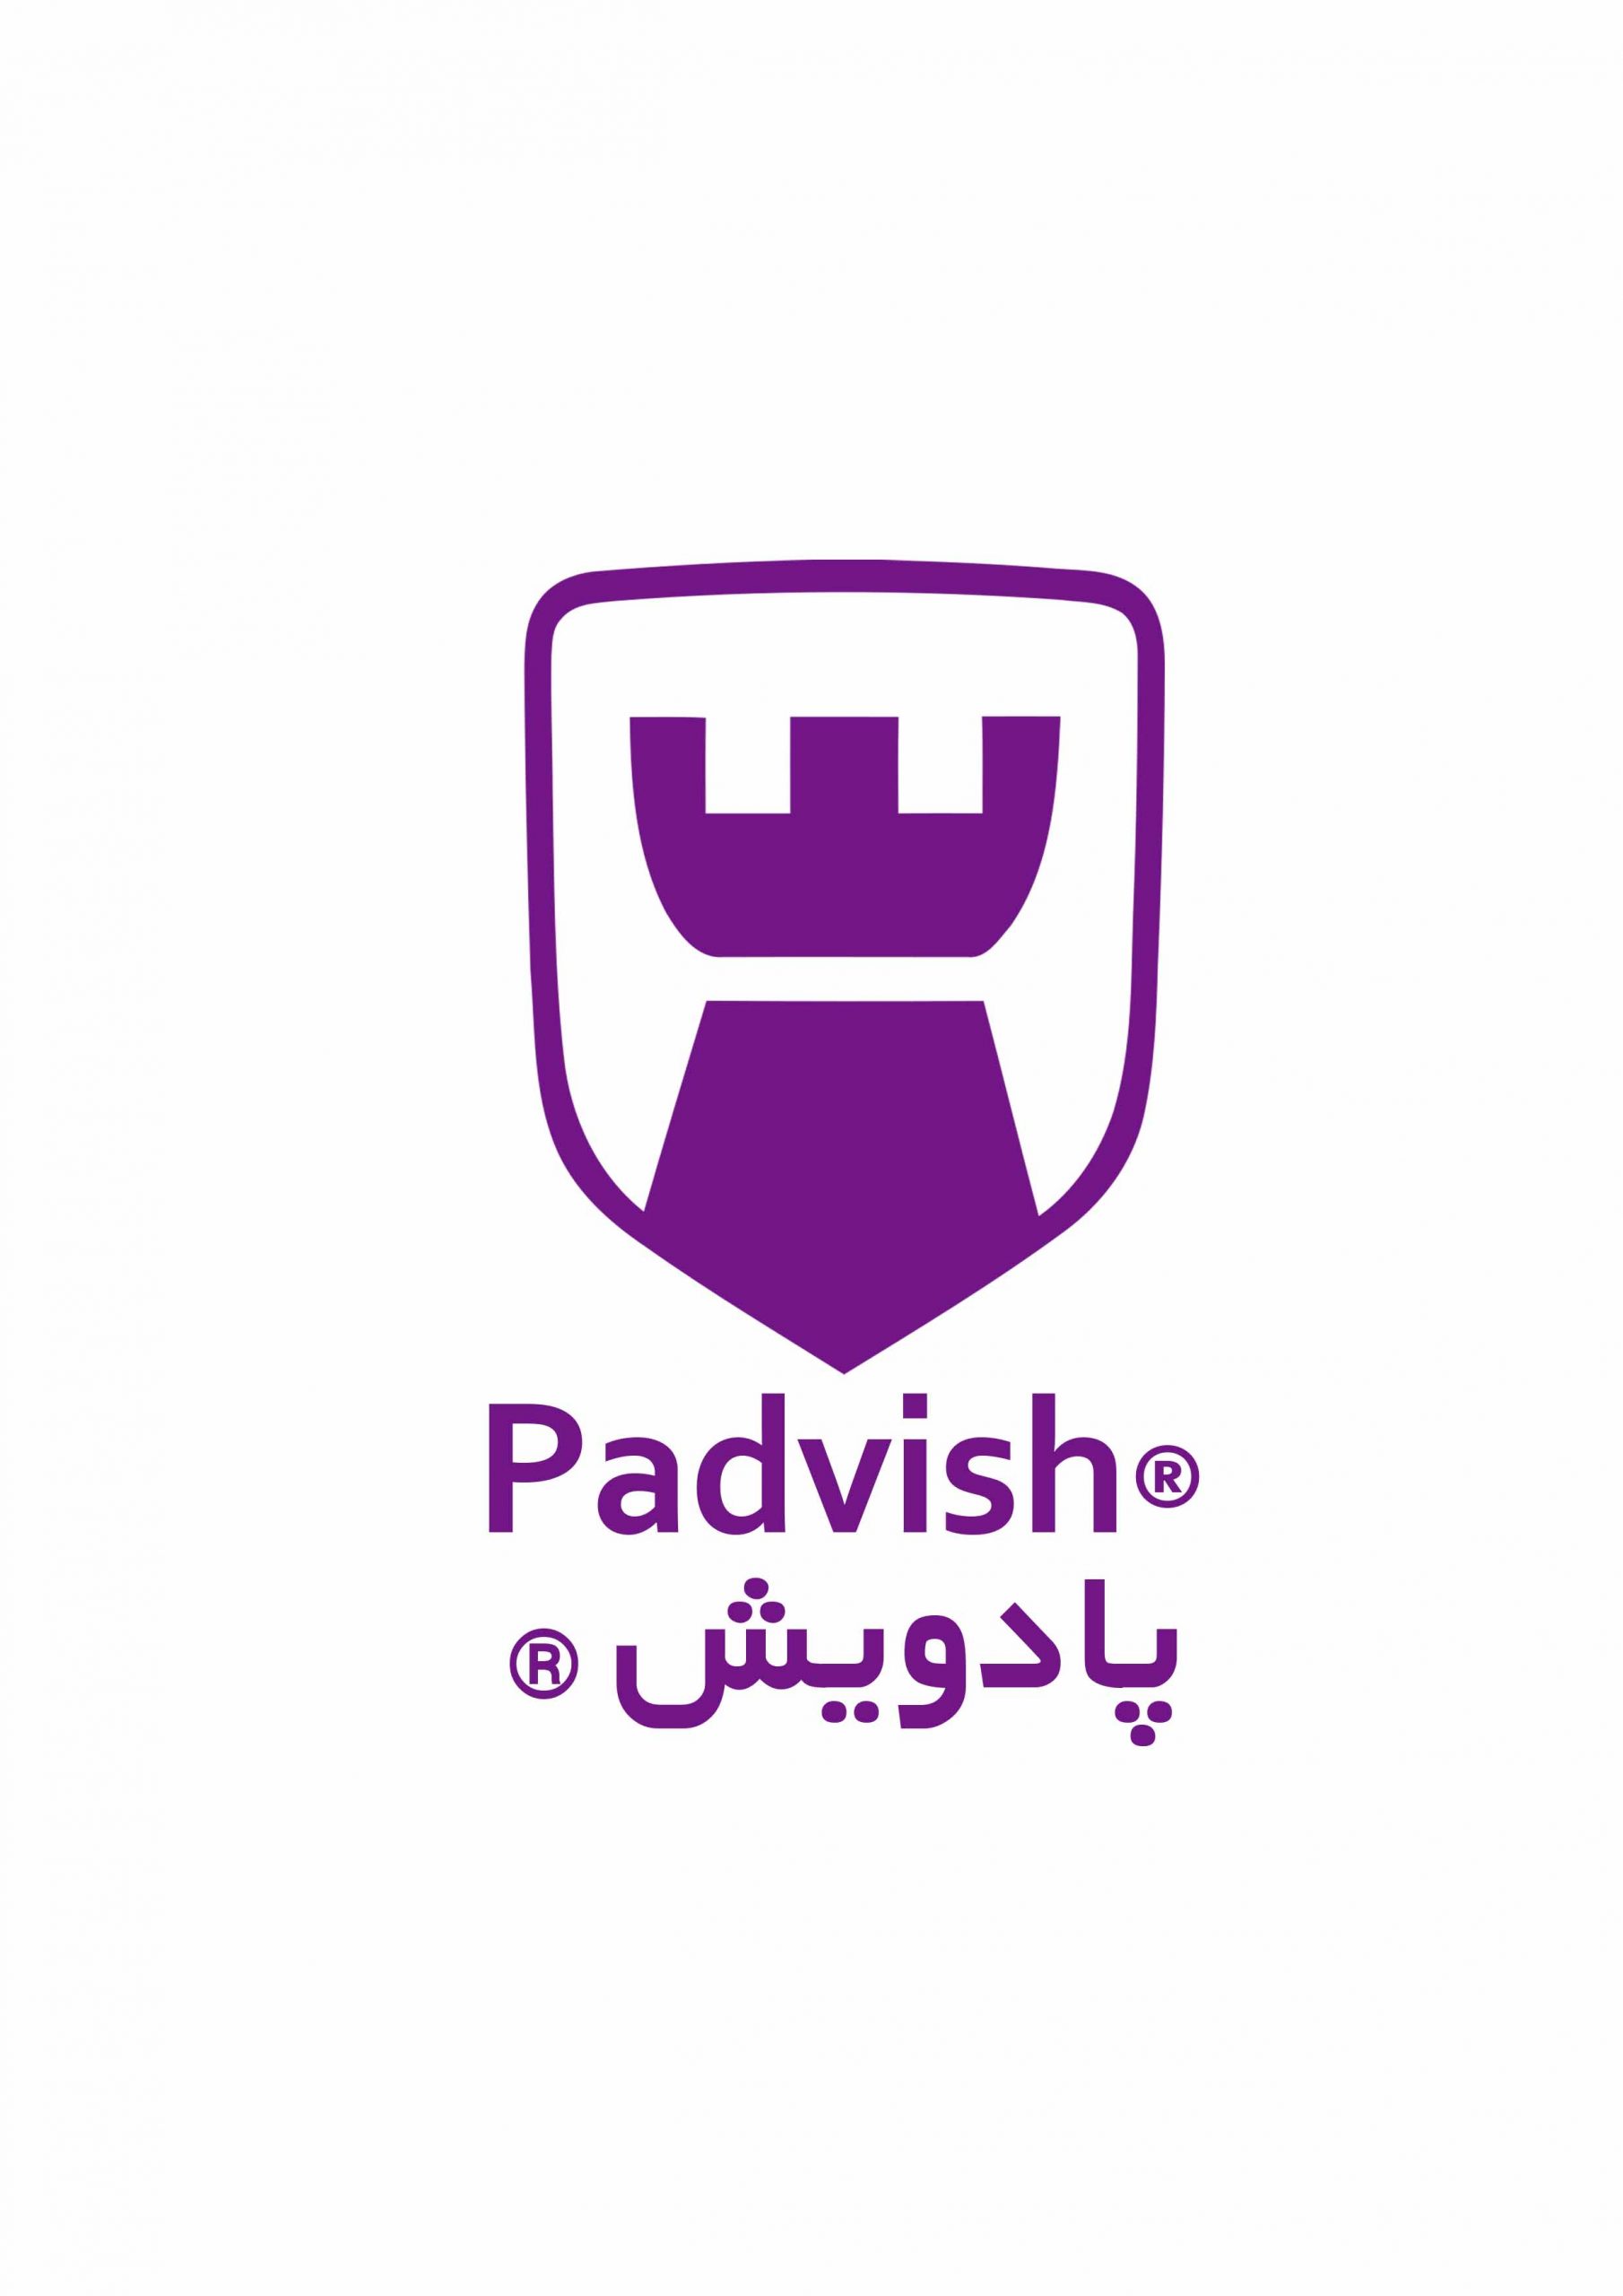 padvish logo scaled